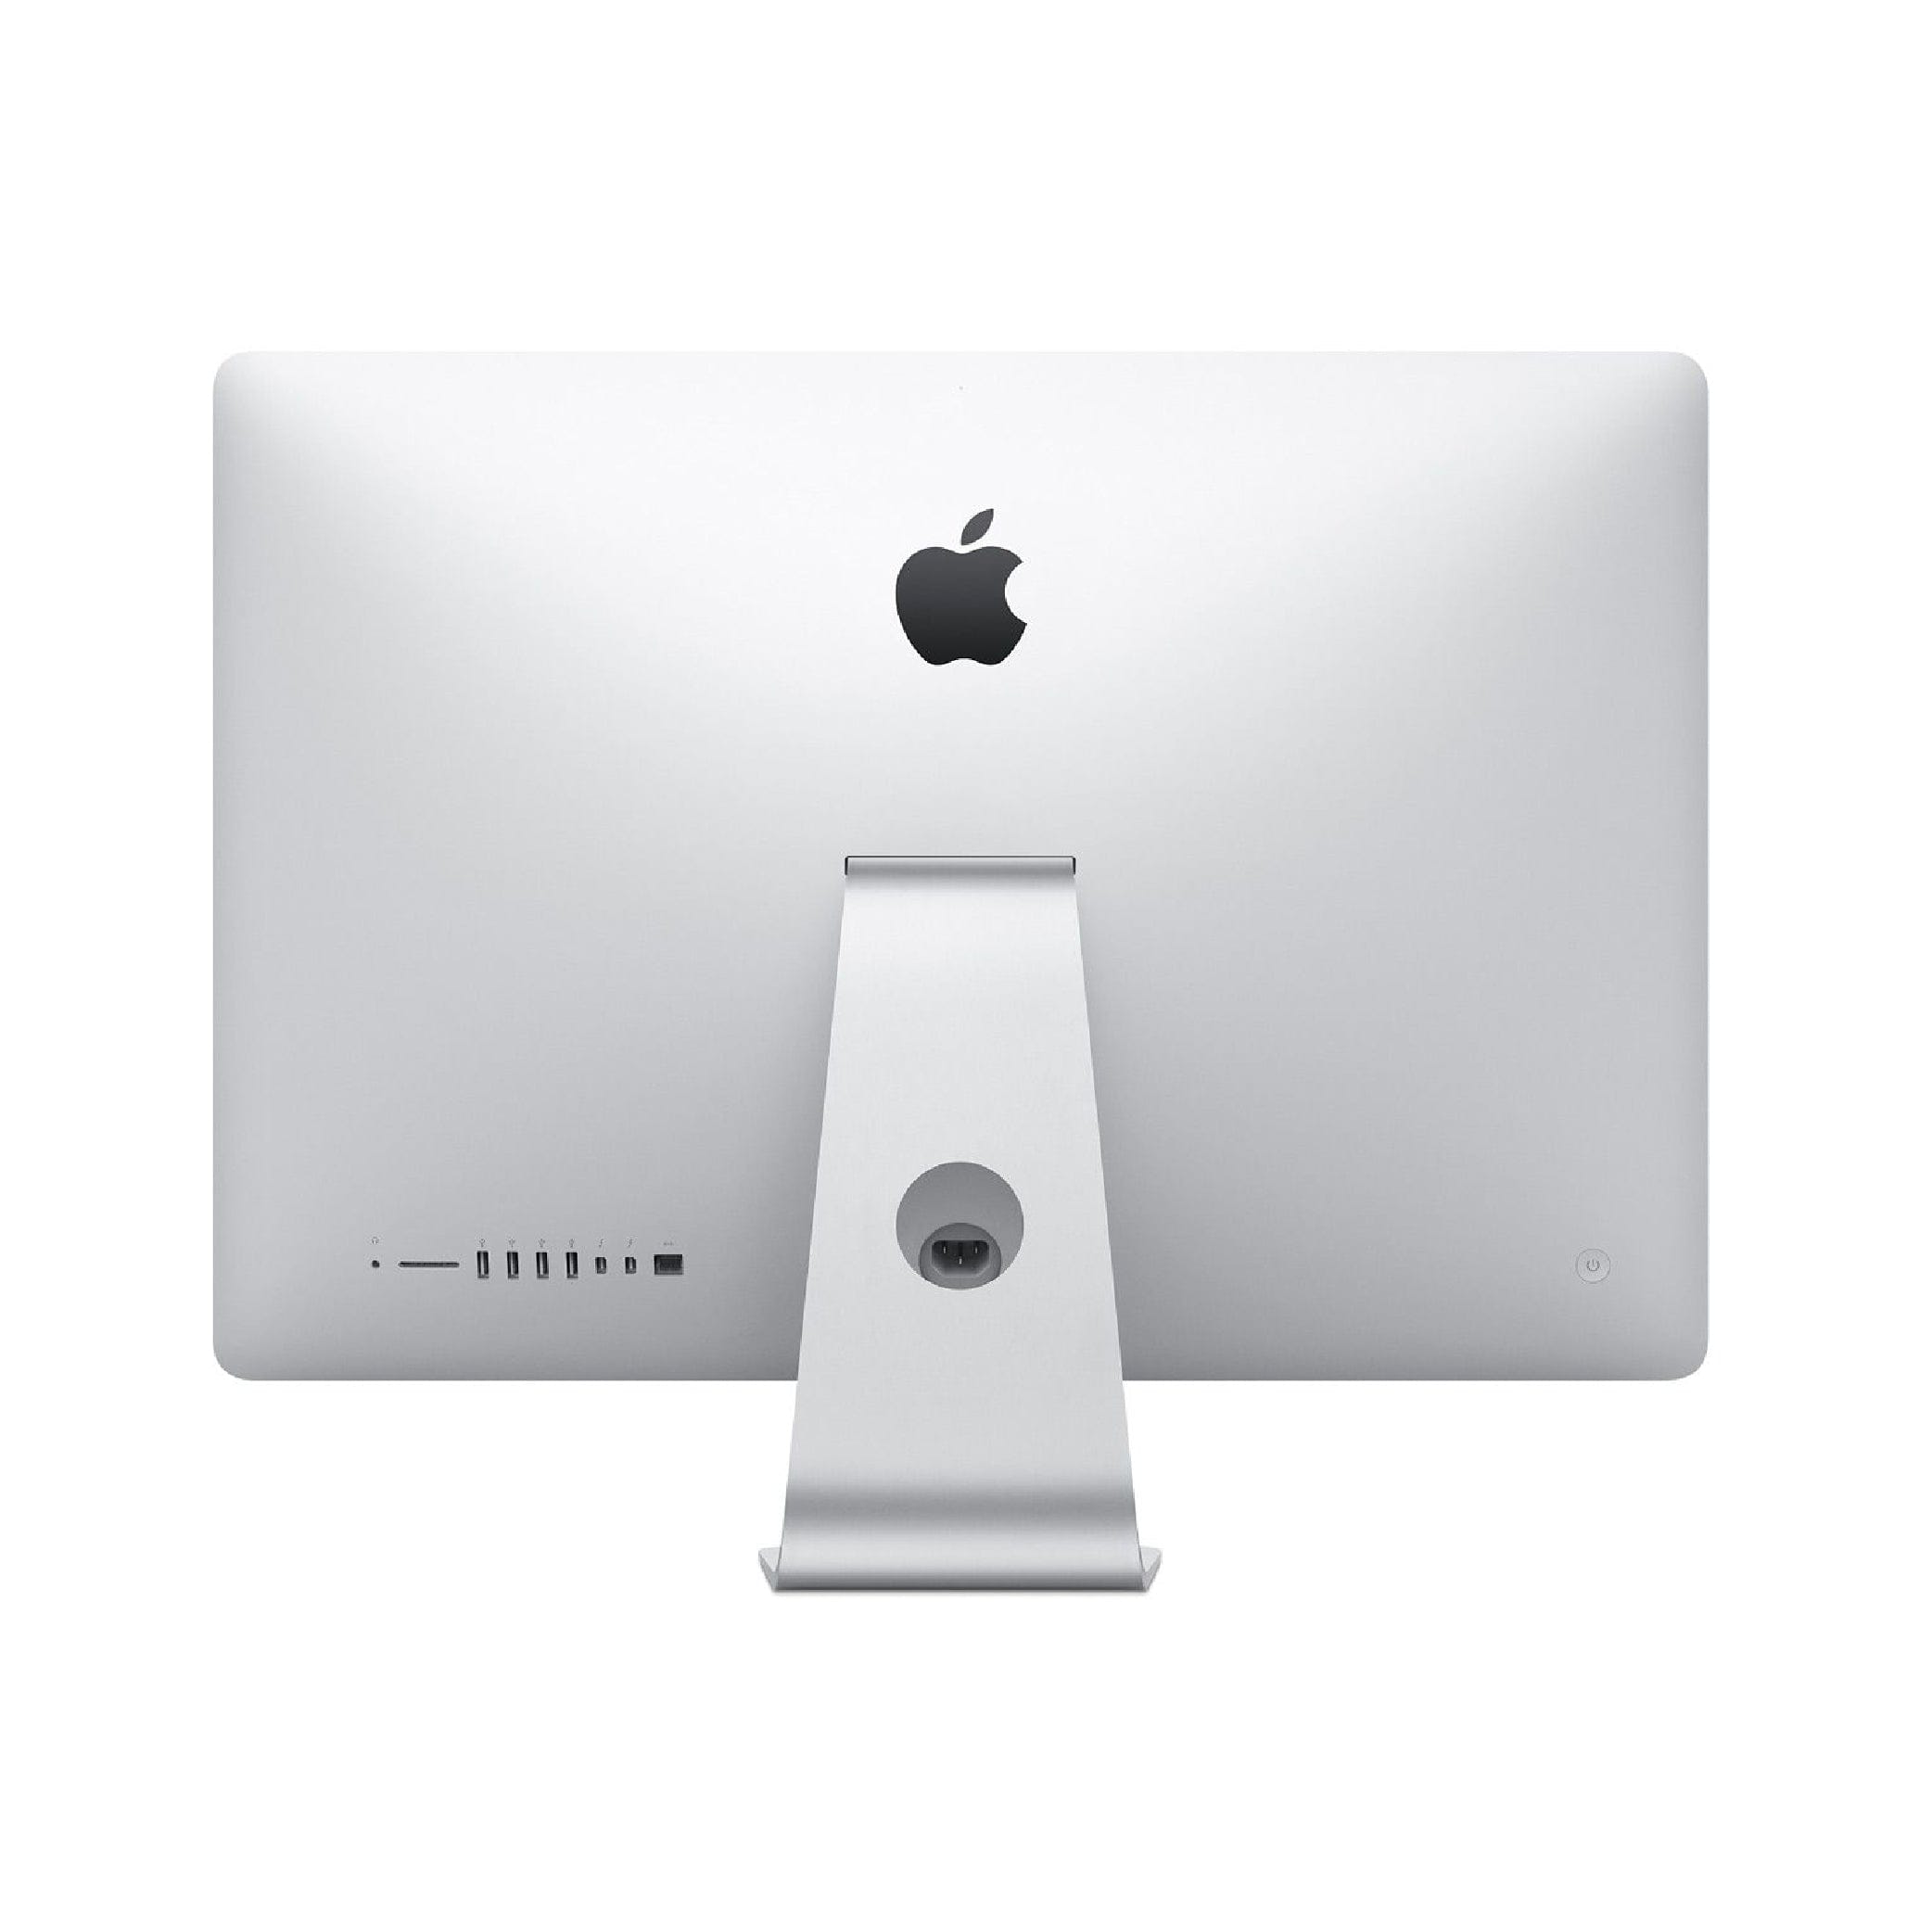 Apple 21.5" iMac (Mid 2017) MMQA2LL/A 2.3 GHz Intel Core i5 Dual-Core 21.5" 8GB Ram 1TB HD